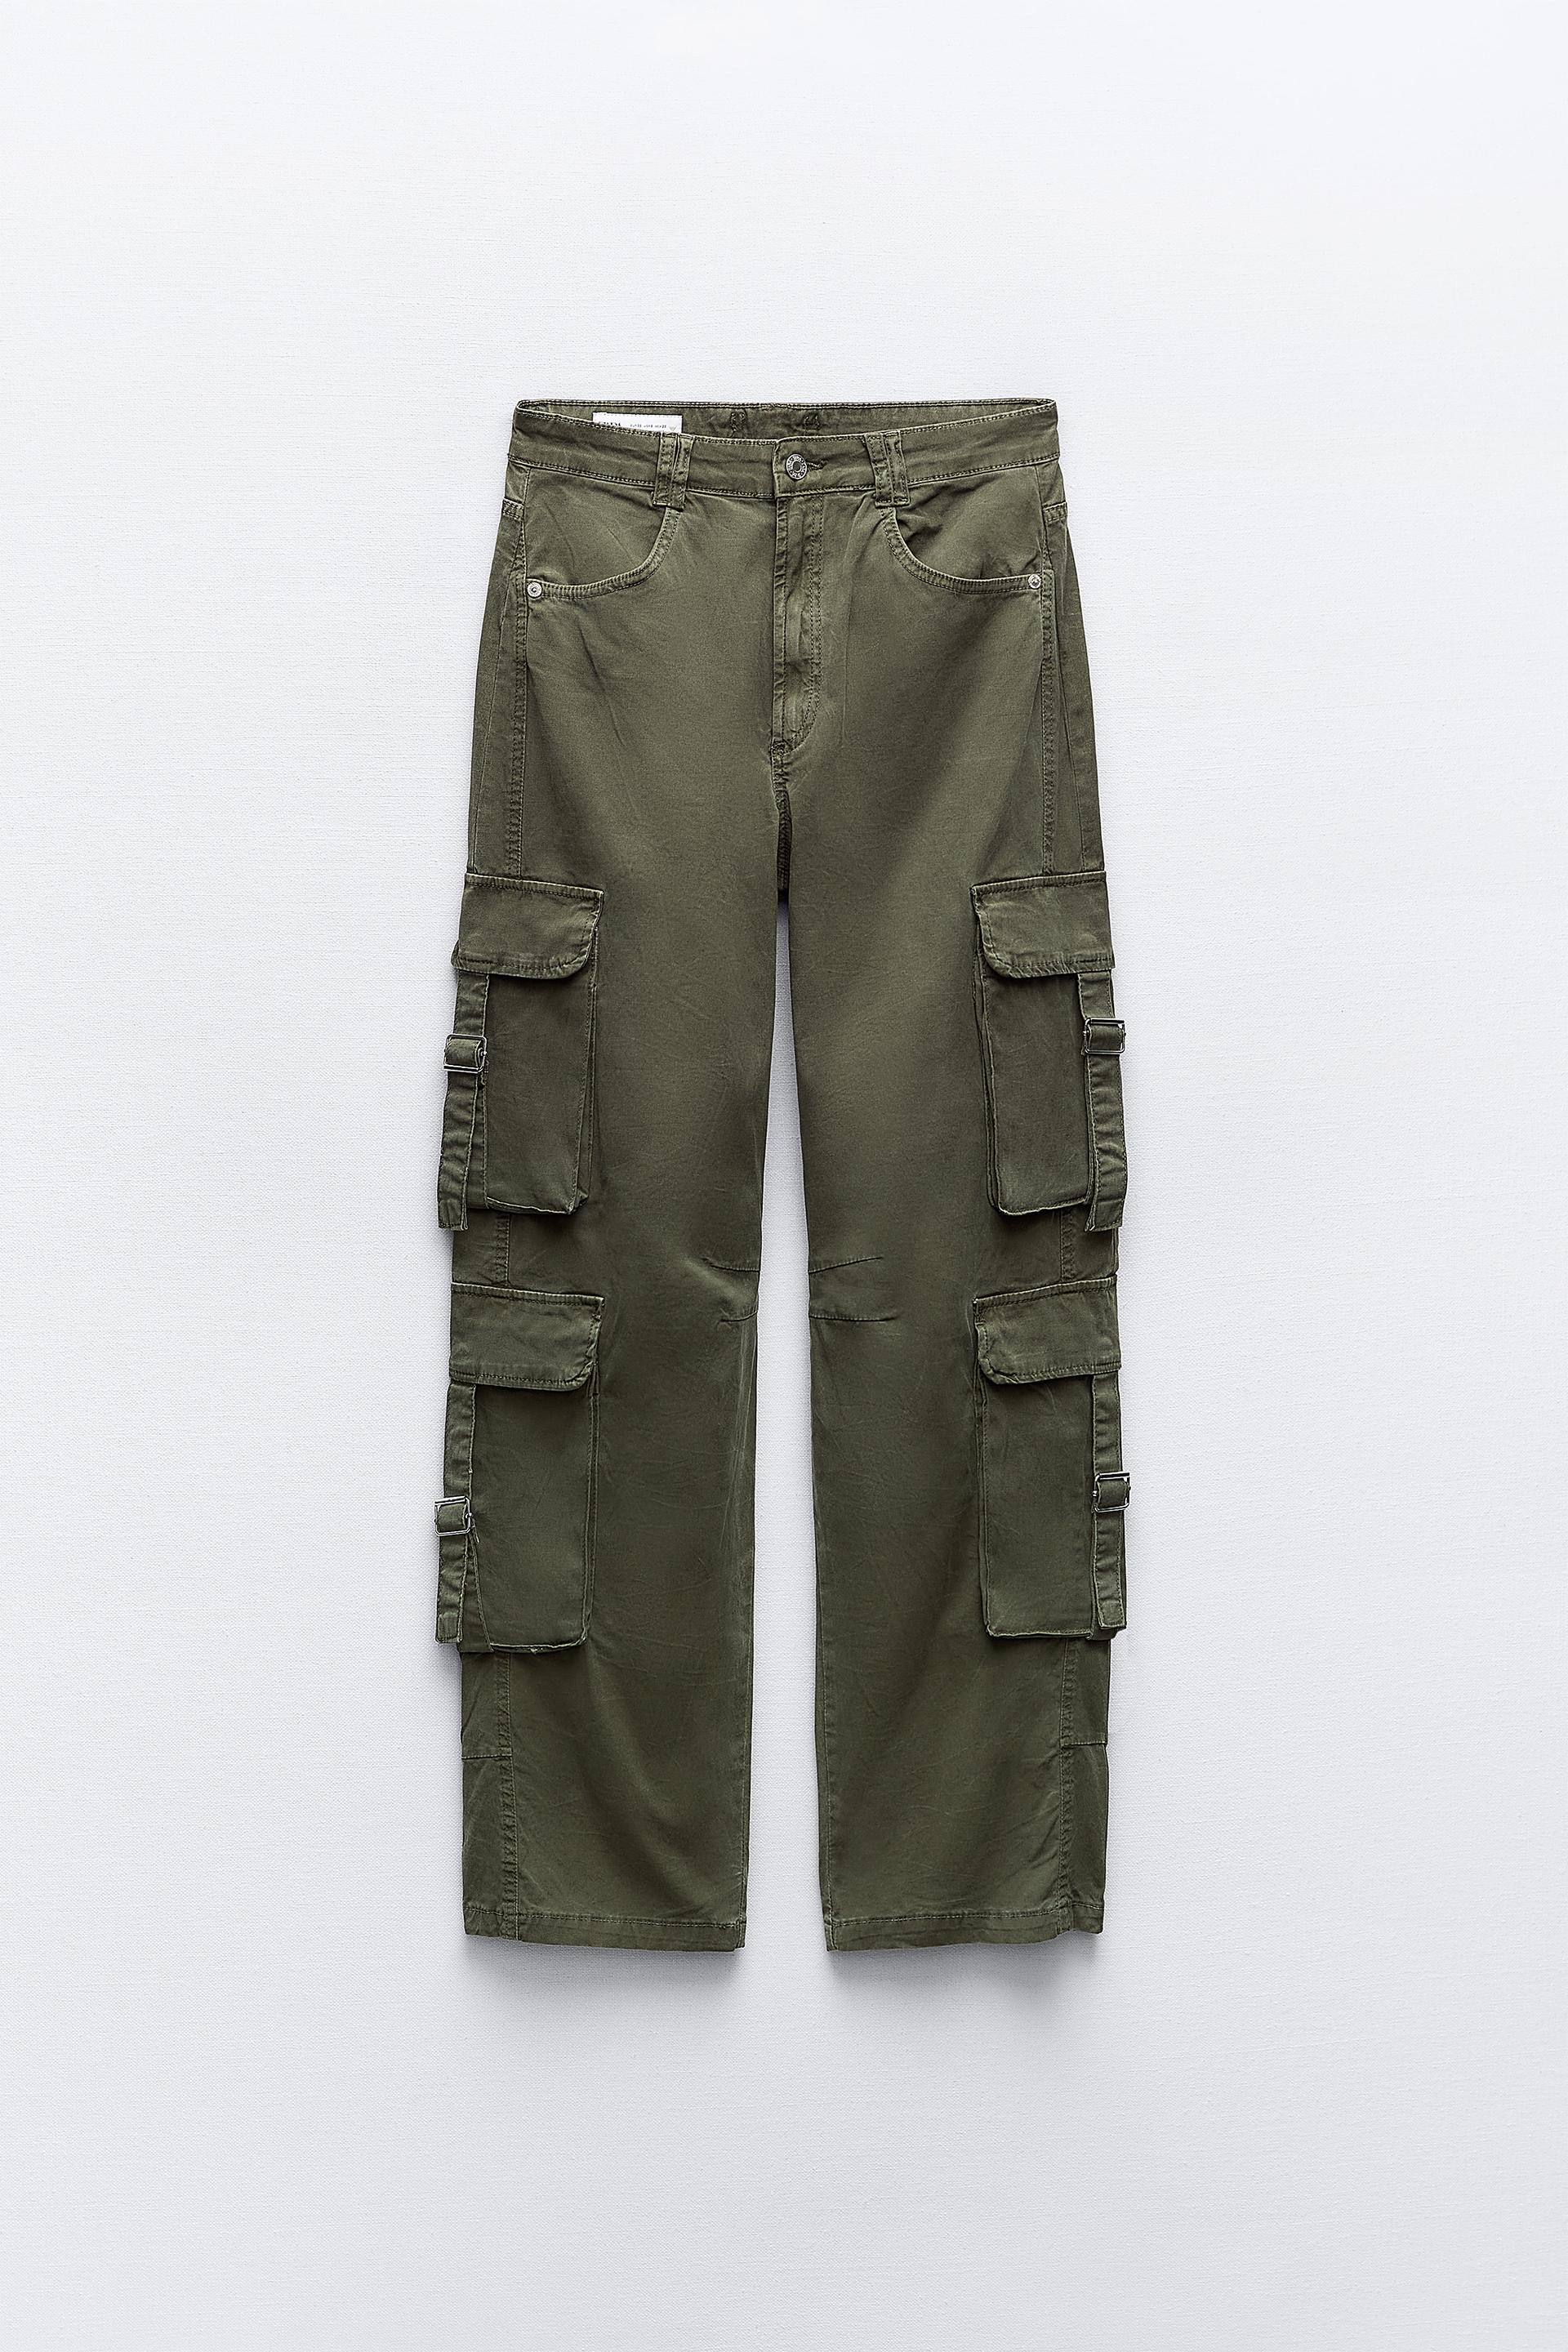 Zara Charcoal Garment Dye Stretch Pants With Fine Corduroy Detail